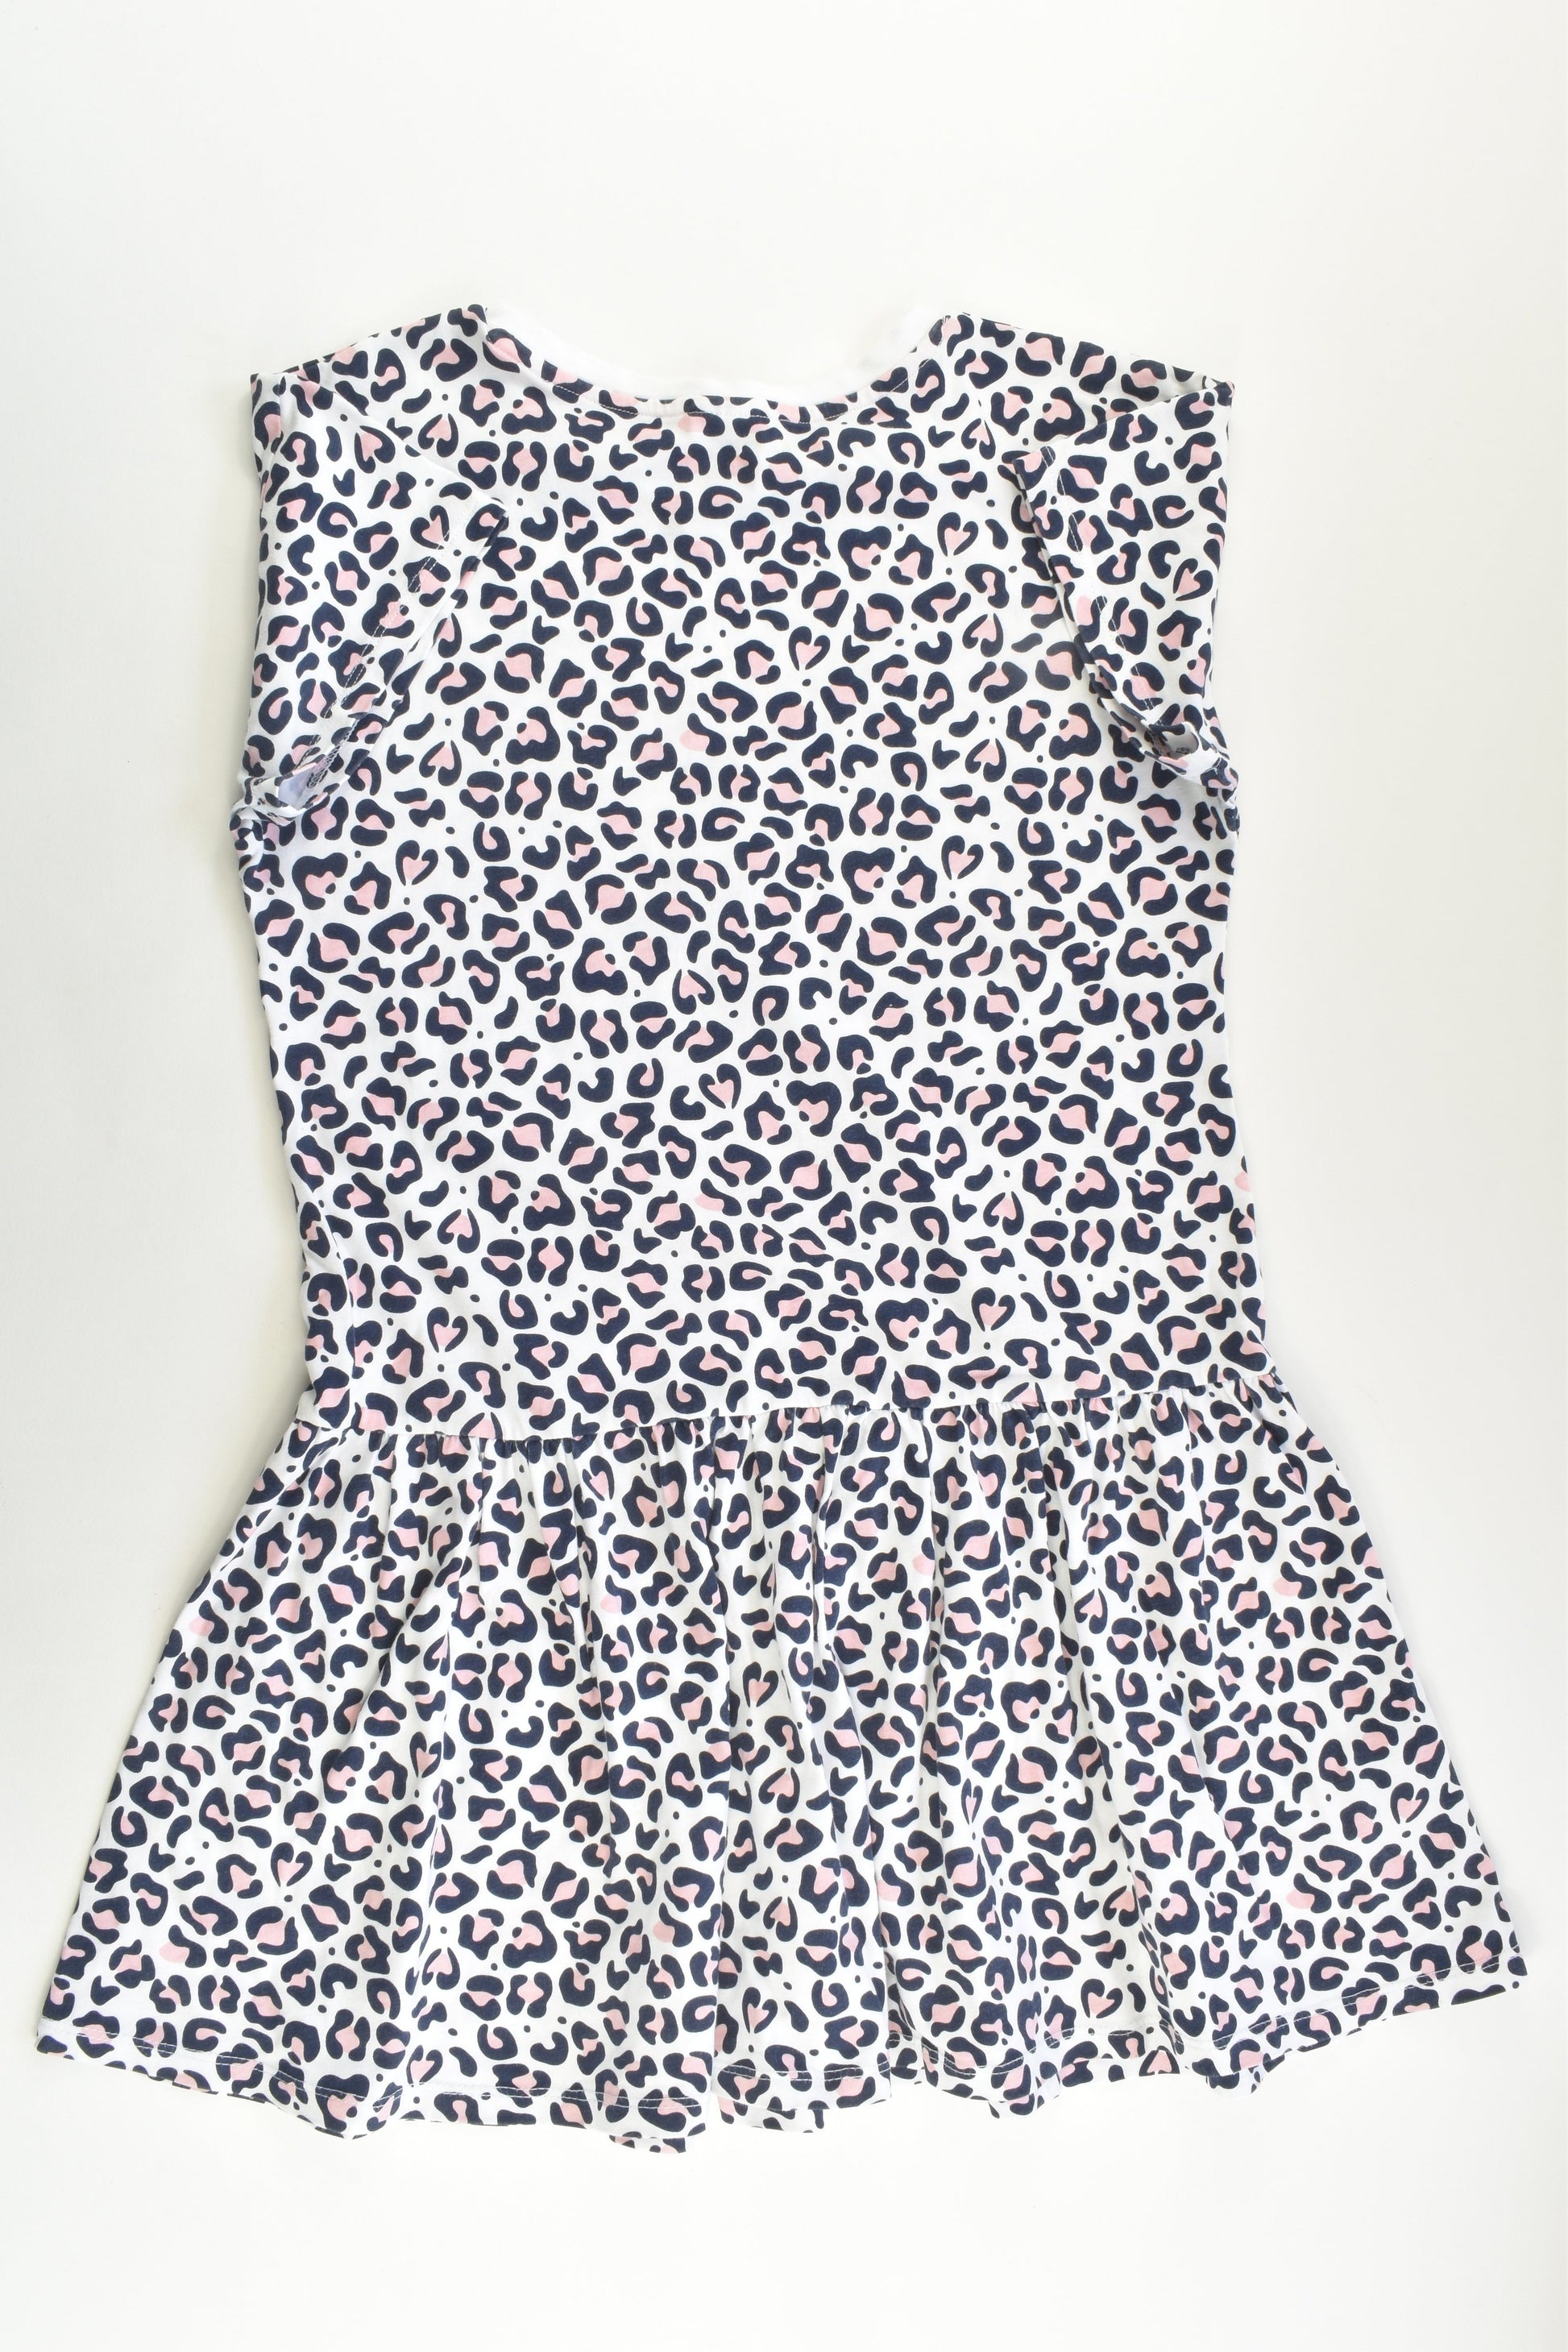 NEW Target Size 8 Leopard Print Dress